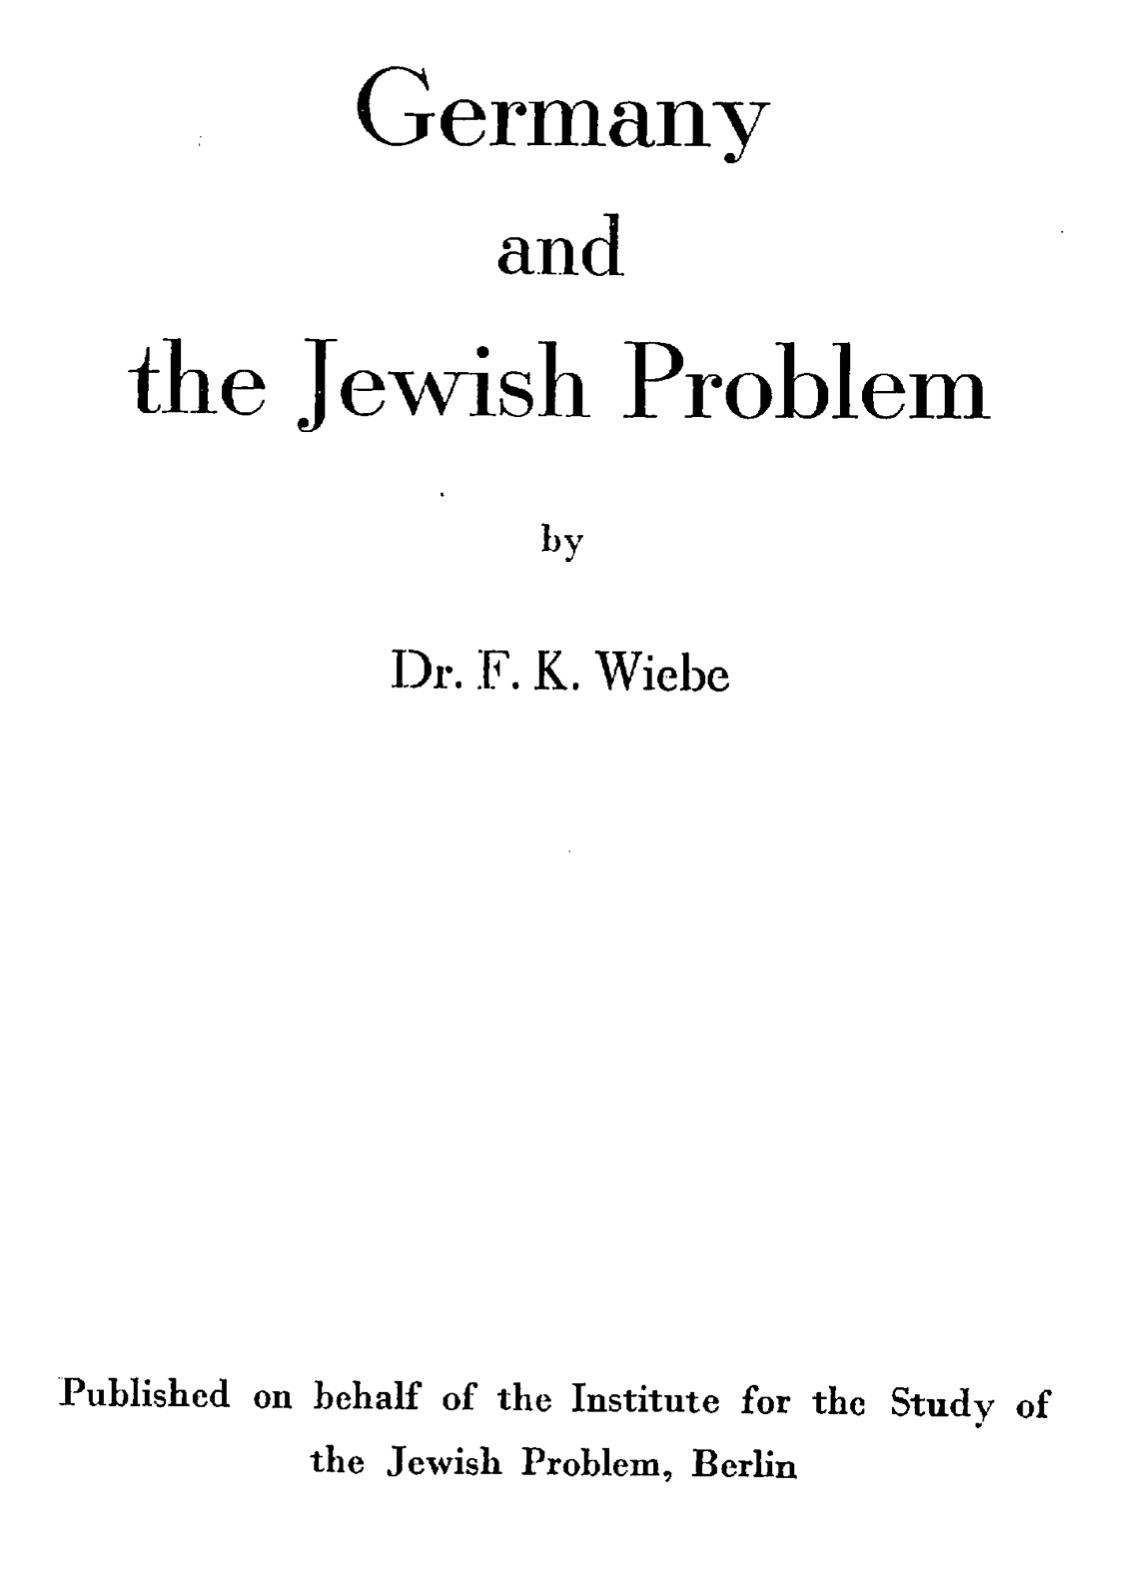 Germany and the Jewish Problem (1940) by Friedrich Karl Wiebe